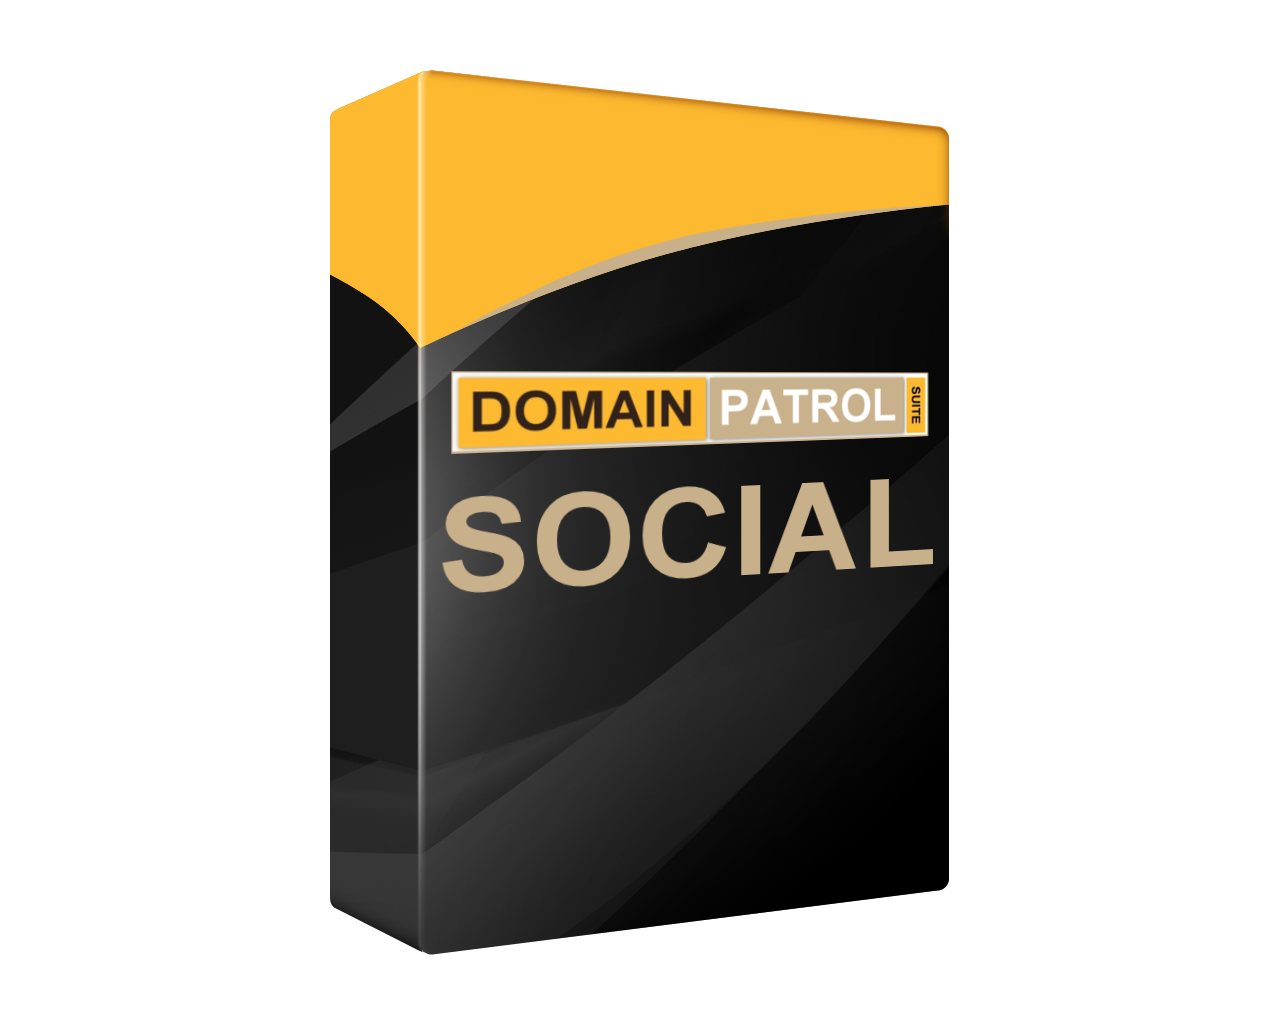 DomainPatrol Social